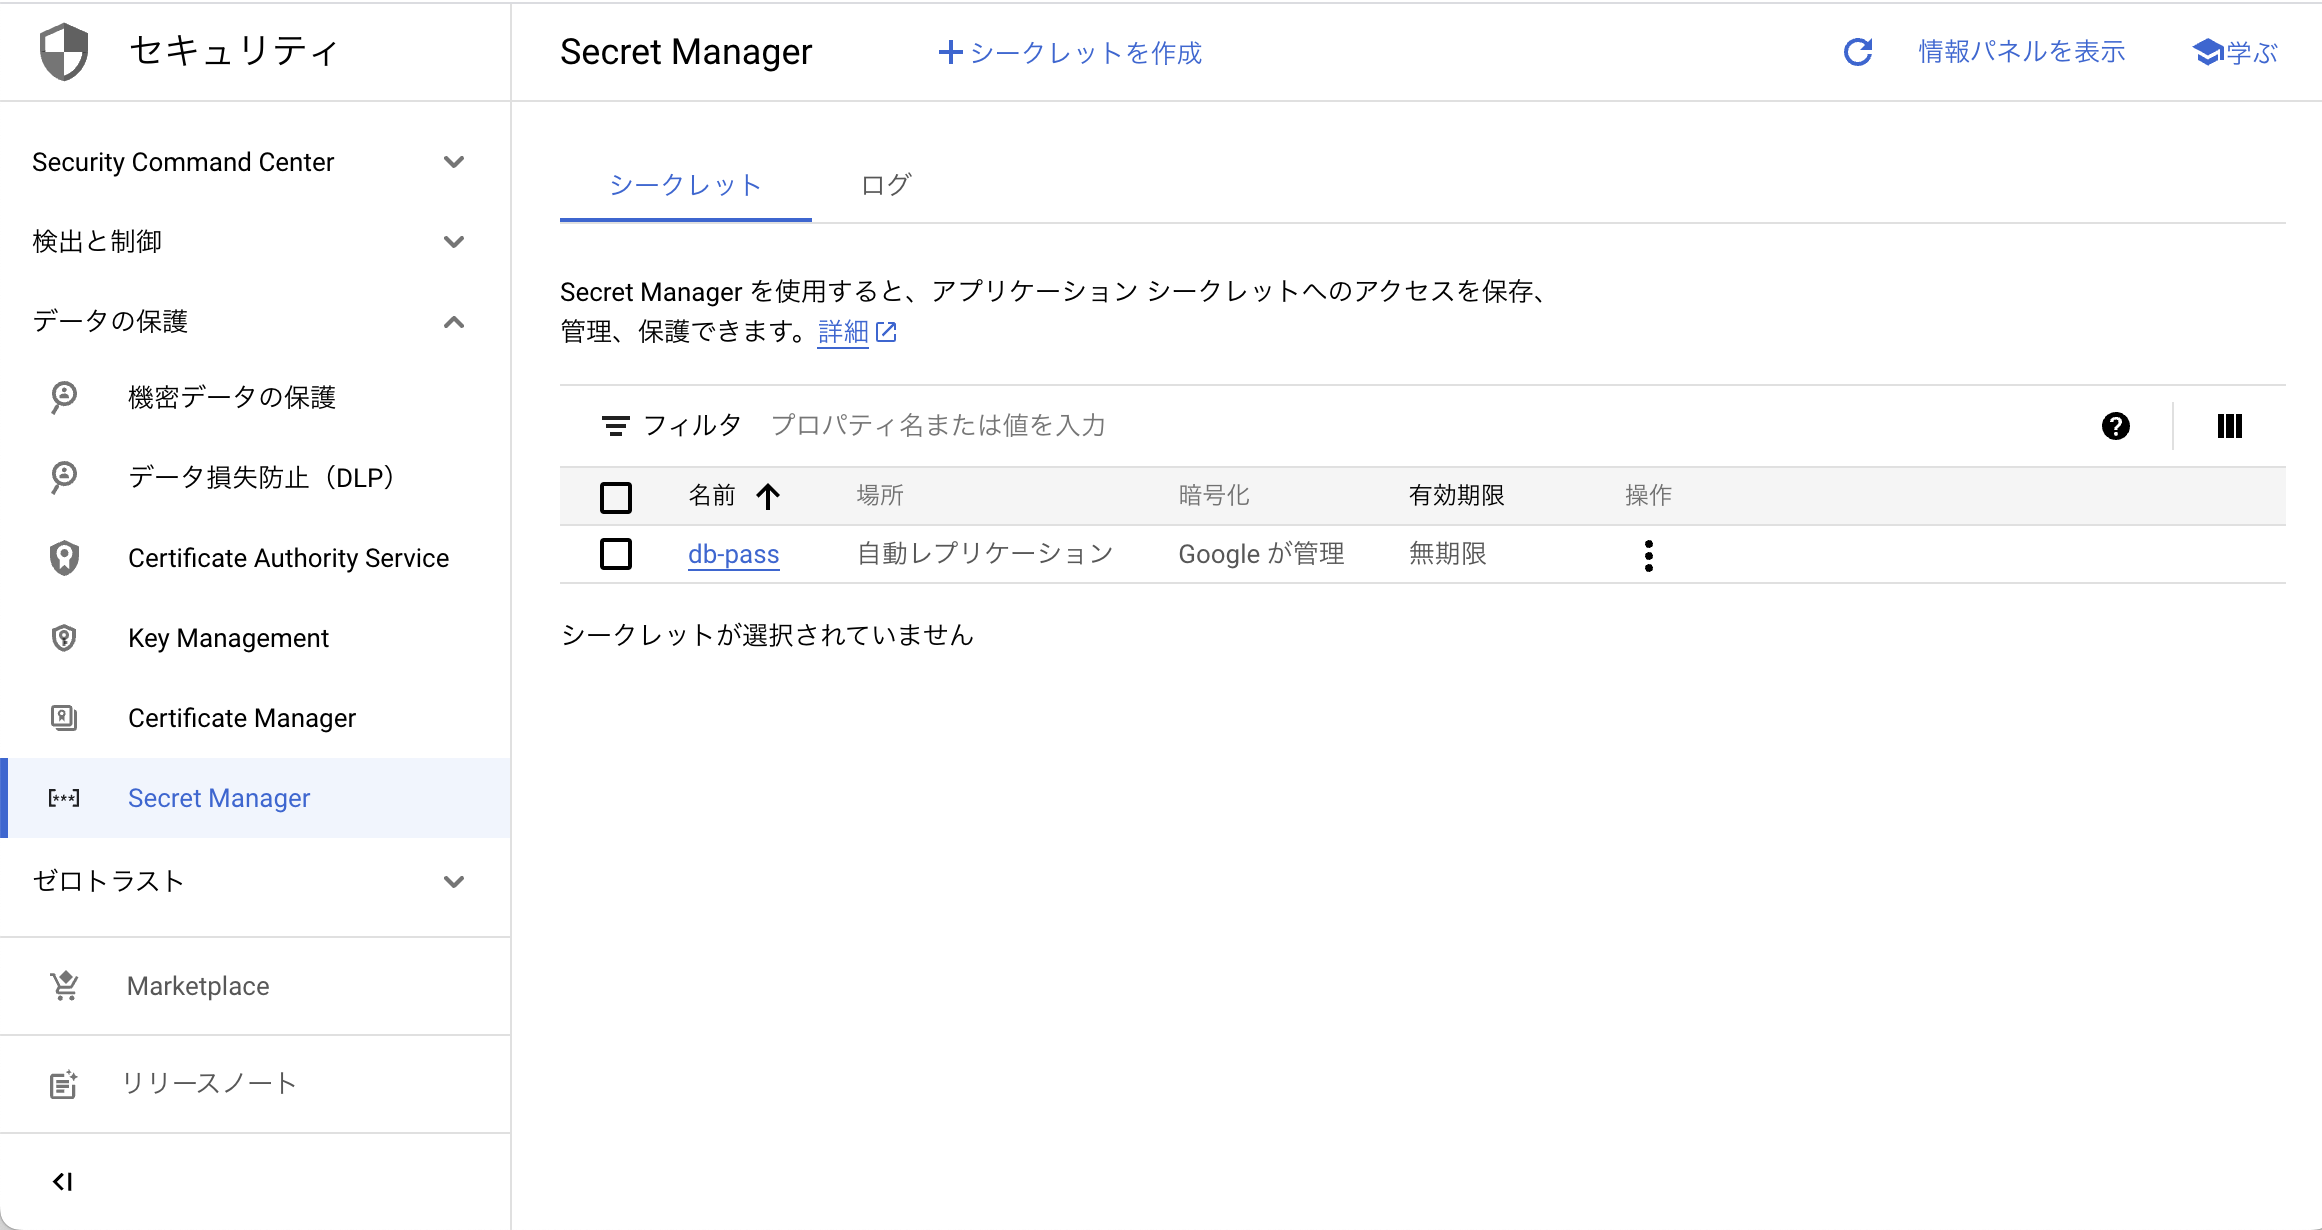 Secret Manager のコンソール画面